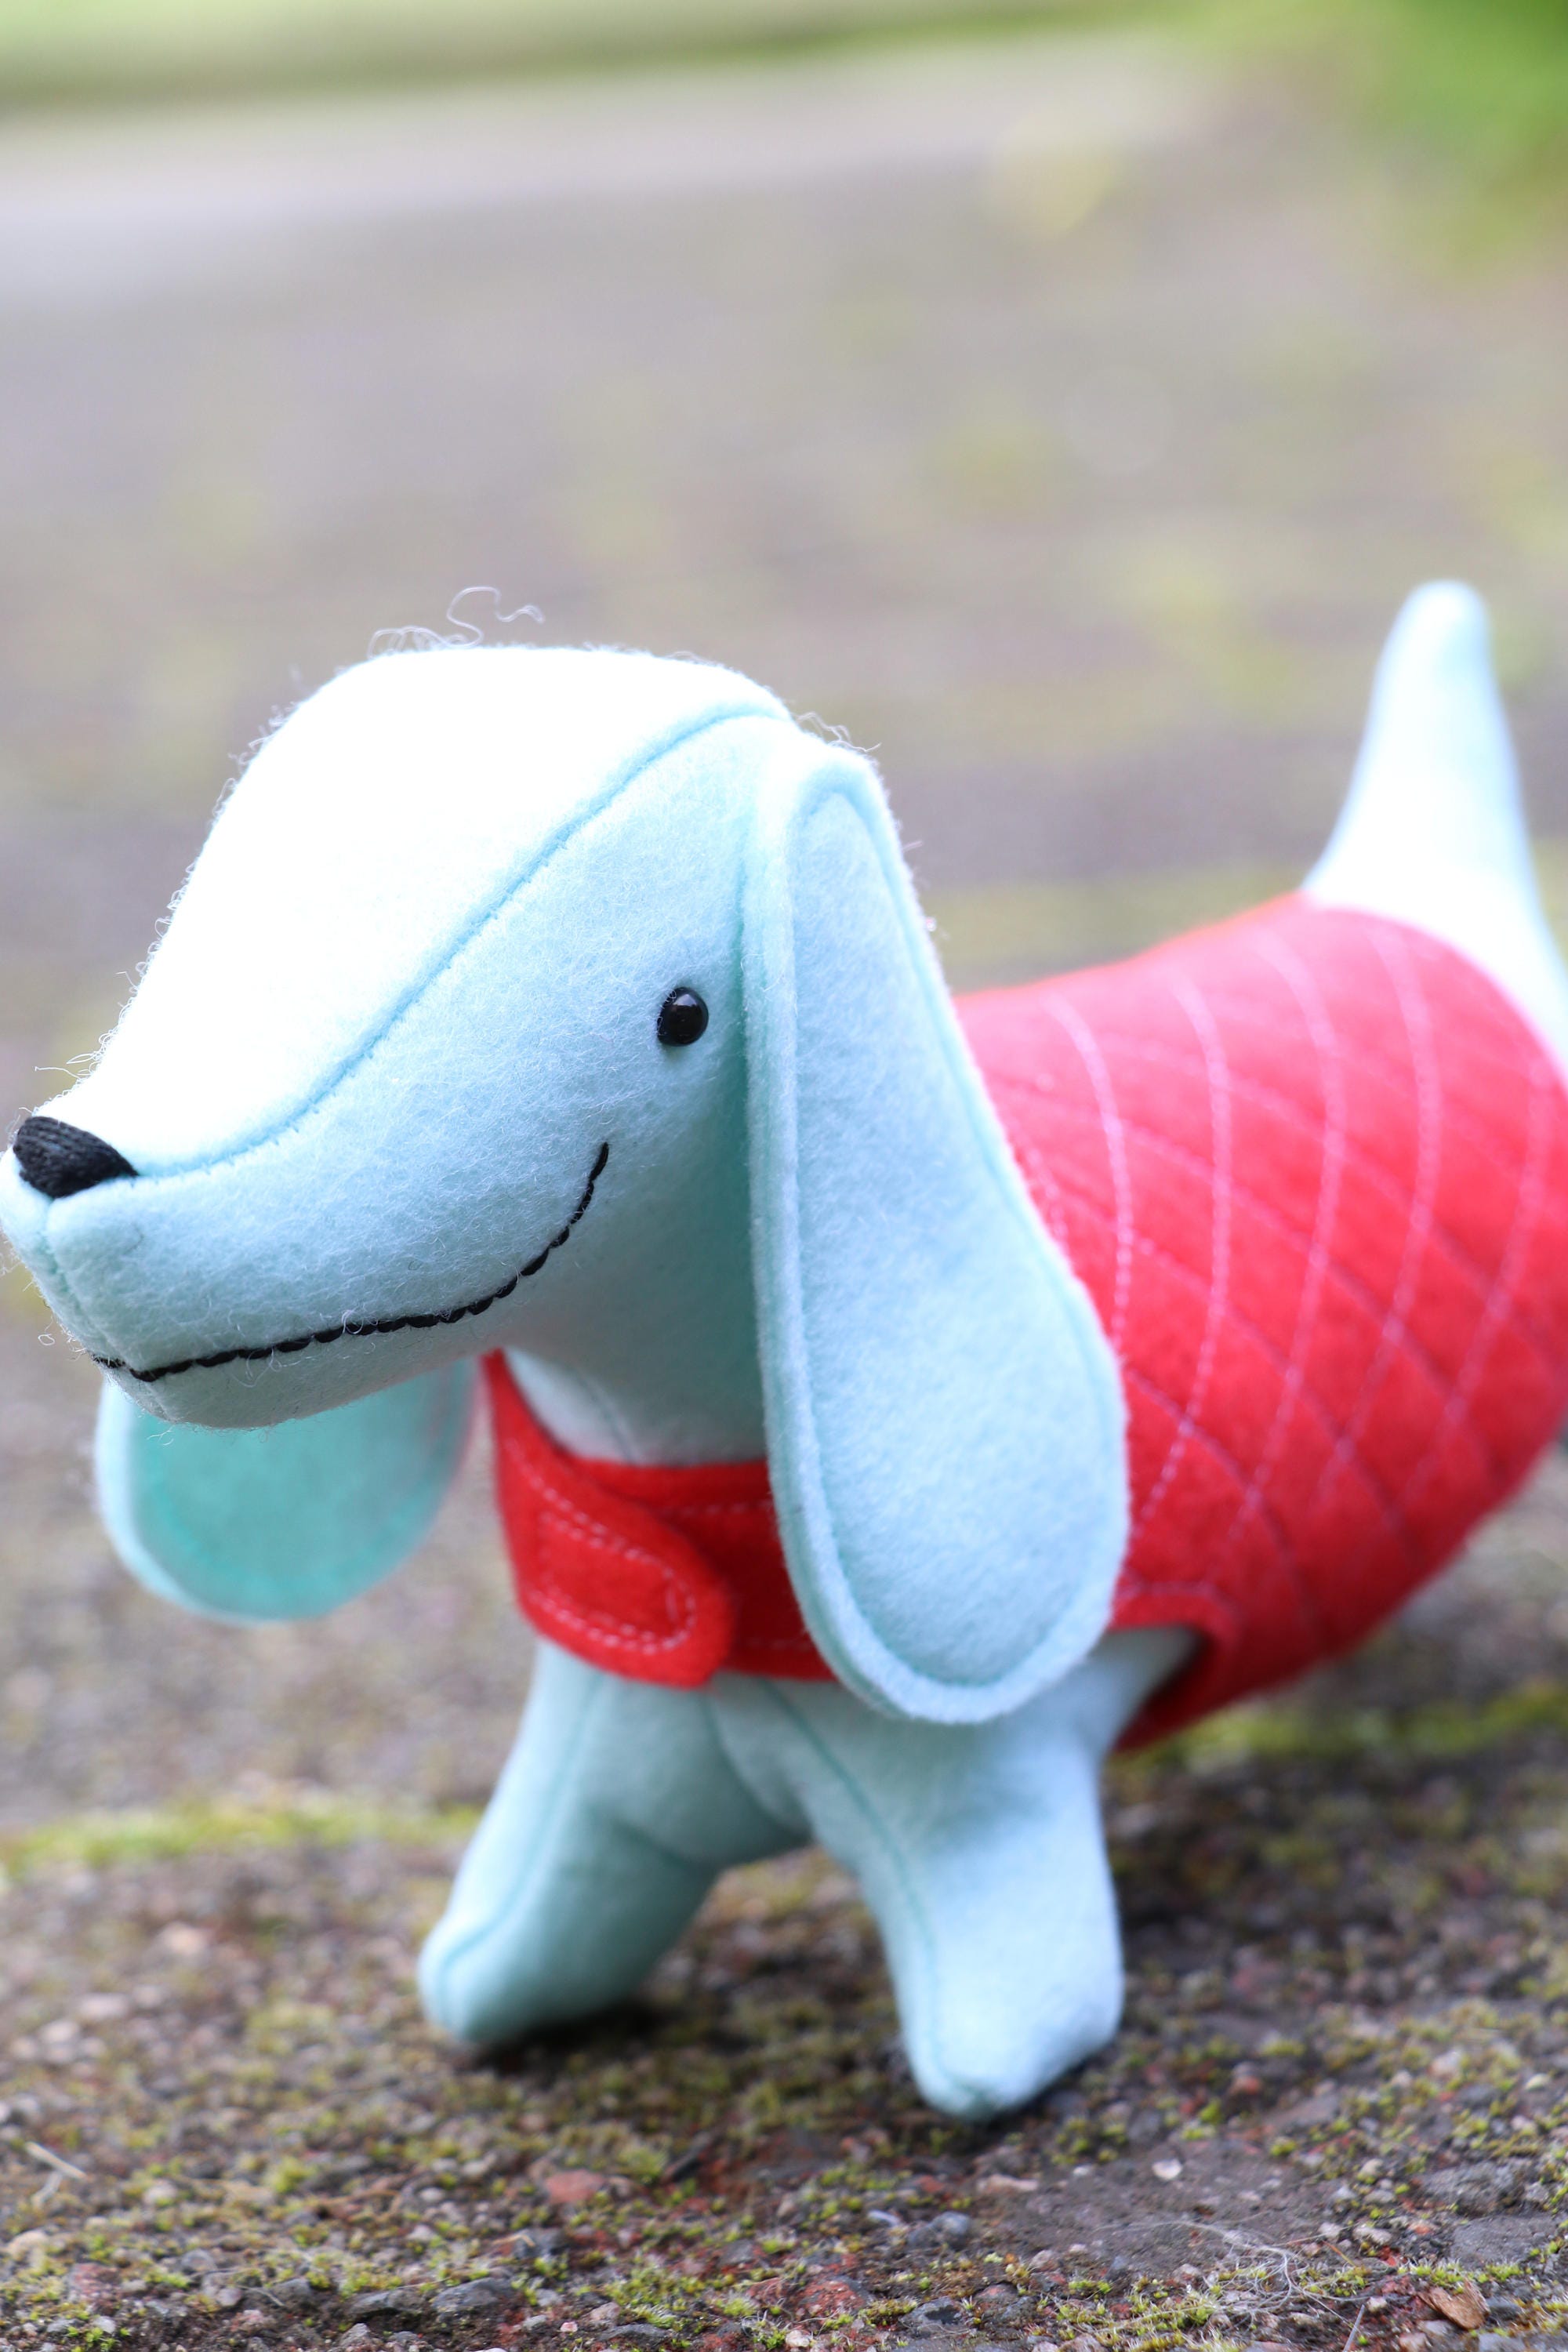 blue felt sausage dog toy in pink coat